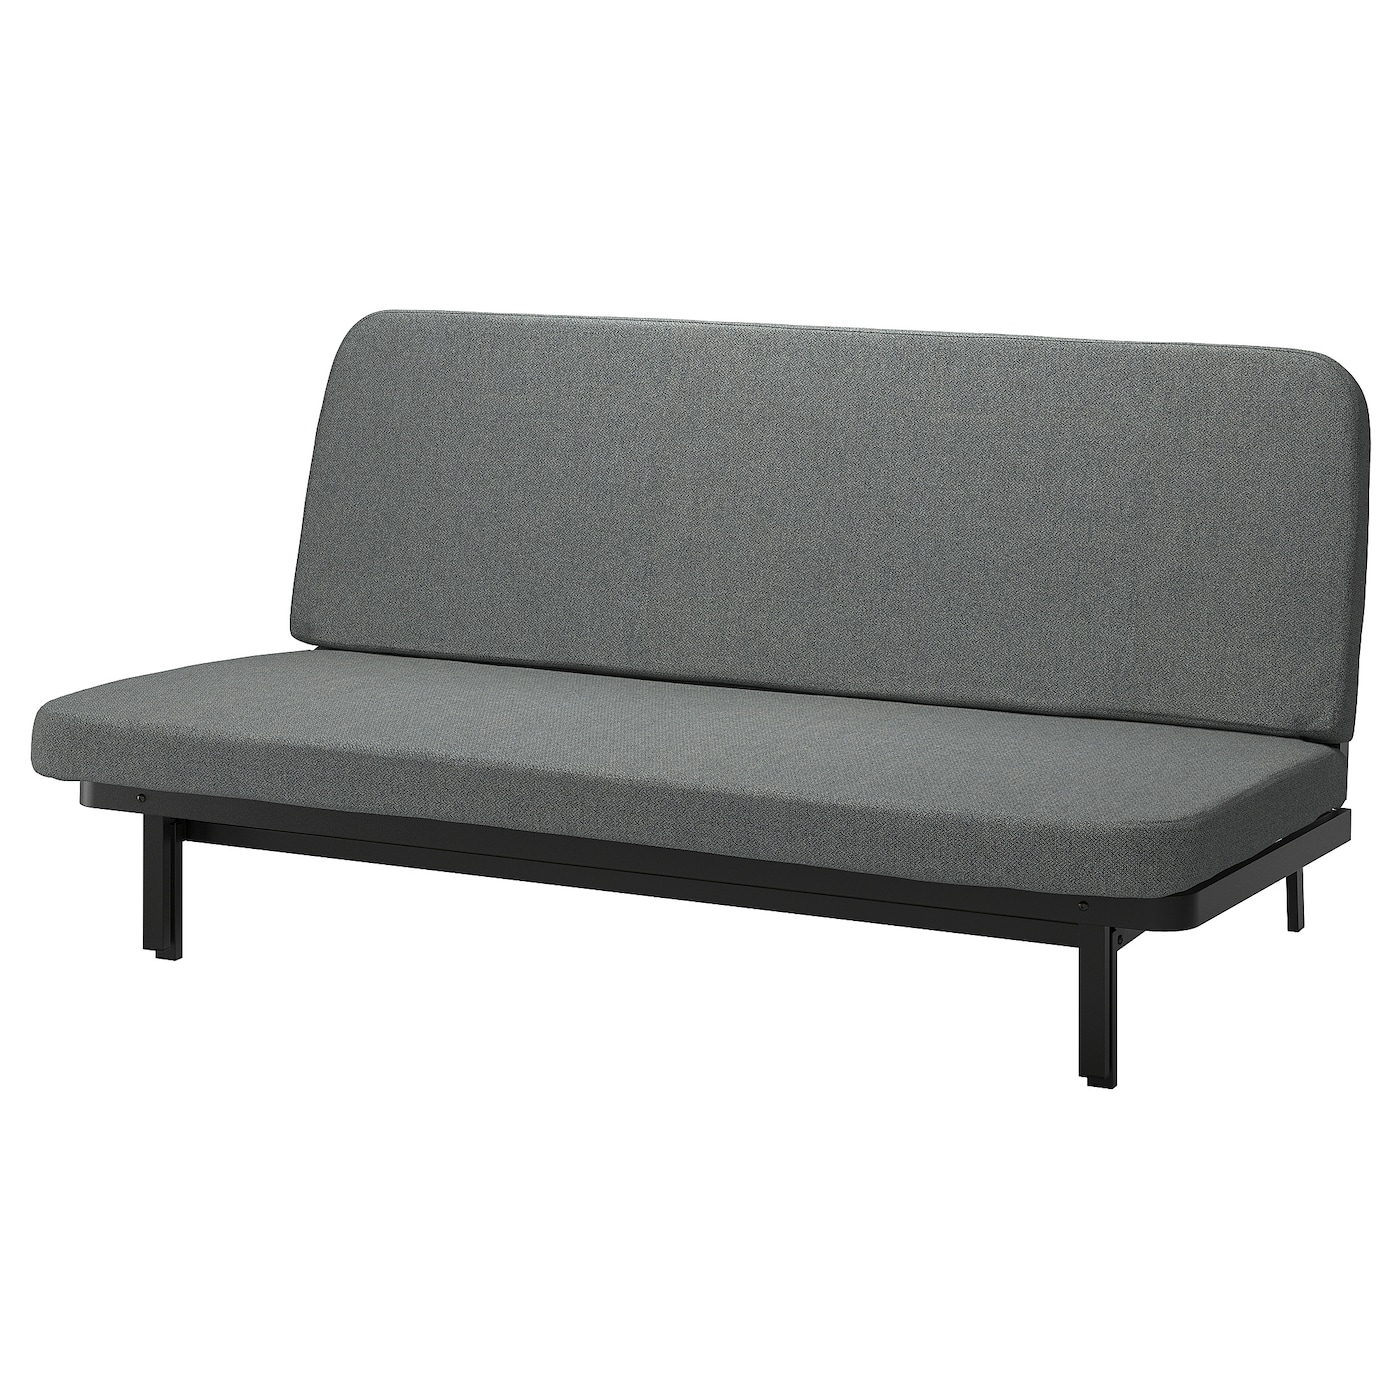 мультяшный матрас ленивый диван кровать подходит для детей татами маты креативный маленький диван кровать стул современная мебель для NYHAMN 3-местный диван-кровать, поролоновый матрас в комплекте/Скартофт черный/светло-серый IKEA